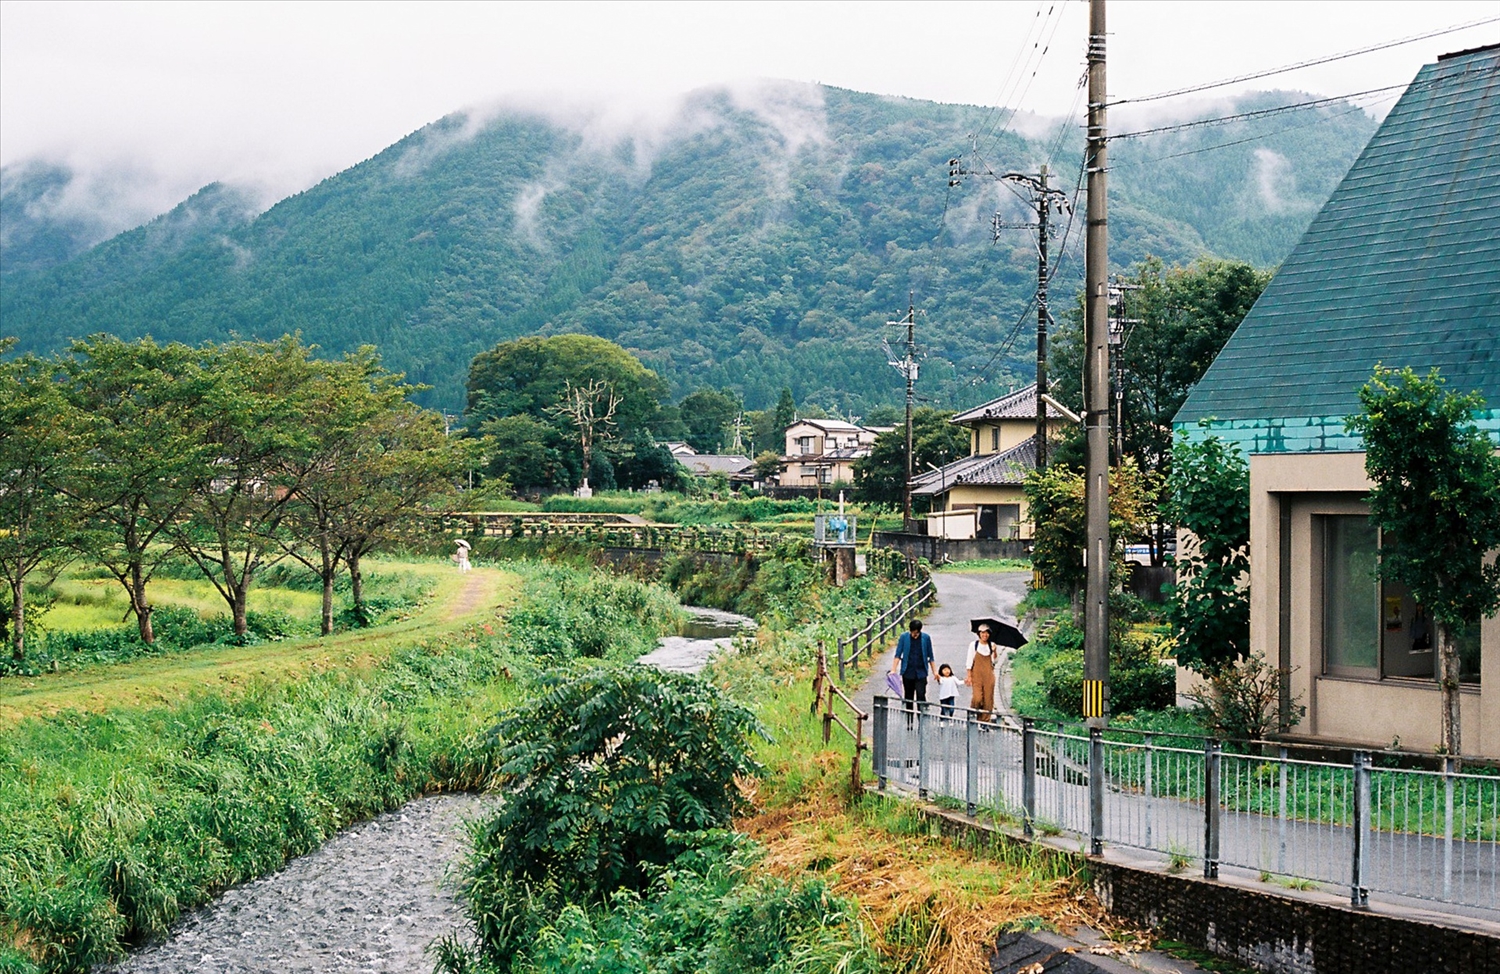 Khung cảnh có nét gần gũi như làng quê nông thôn miền núi ở Việt Nam